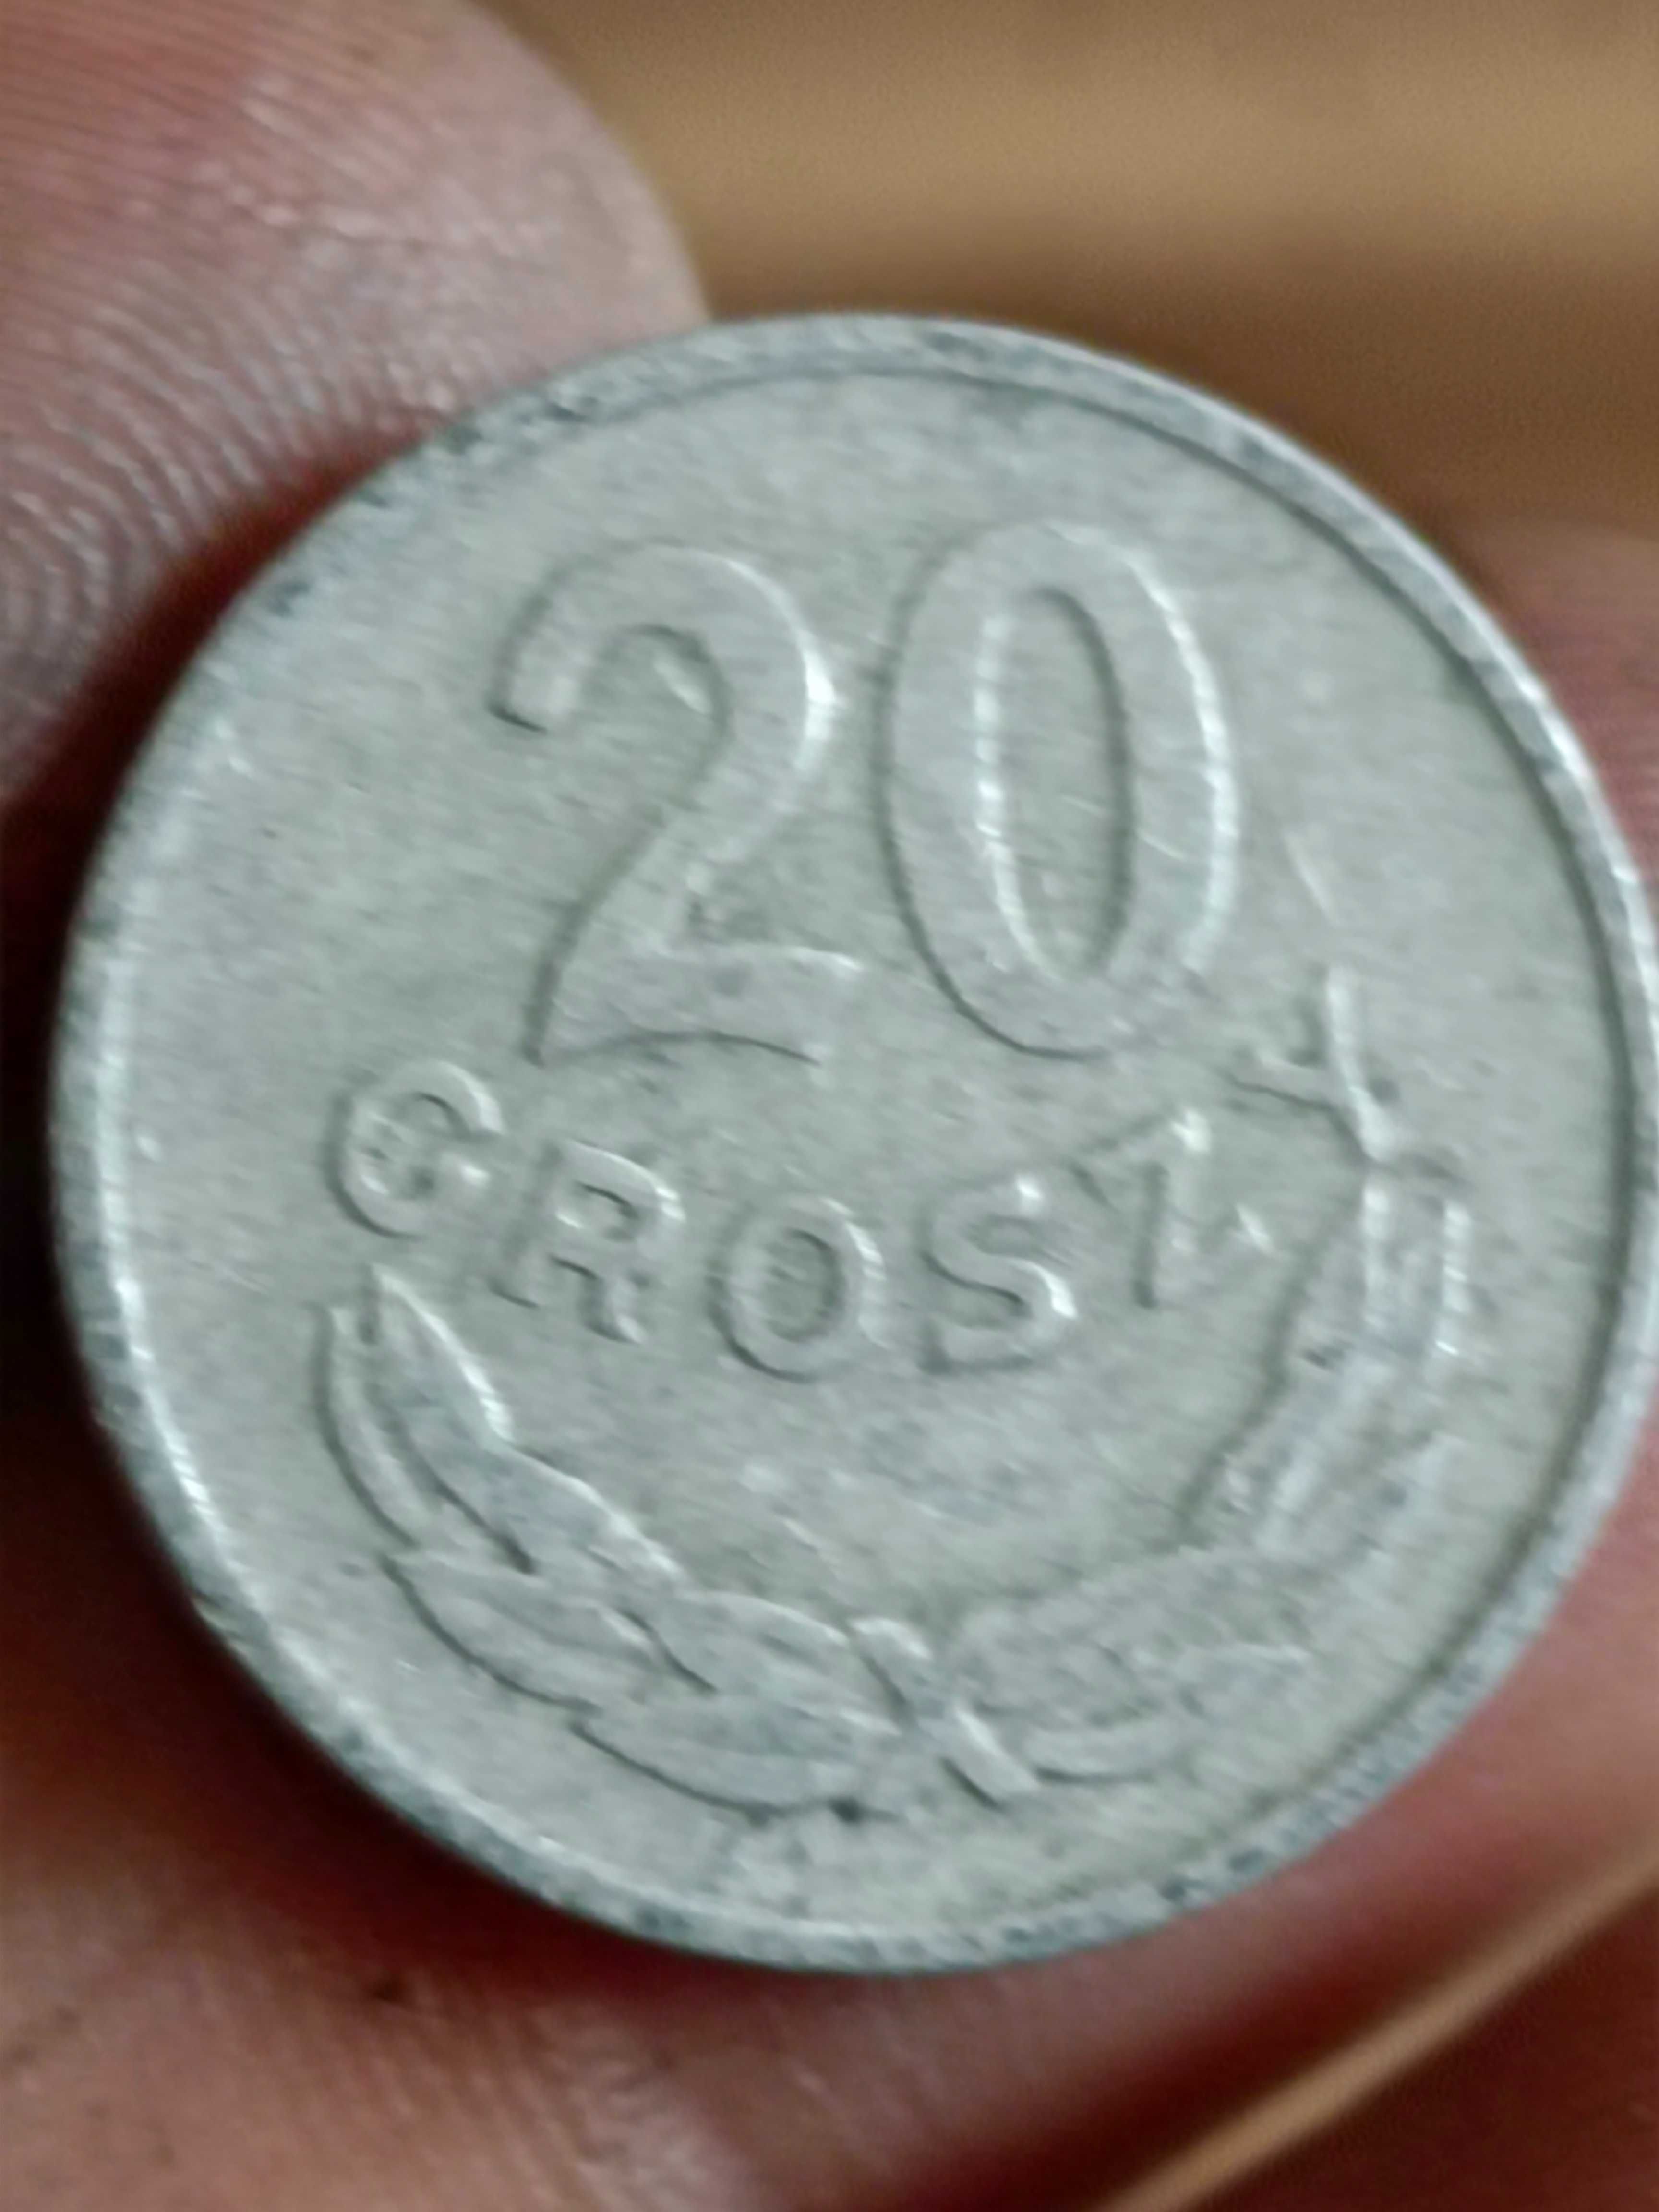 Sprzedam monete 20 groszy 1966 ze znakiem mennicy